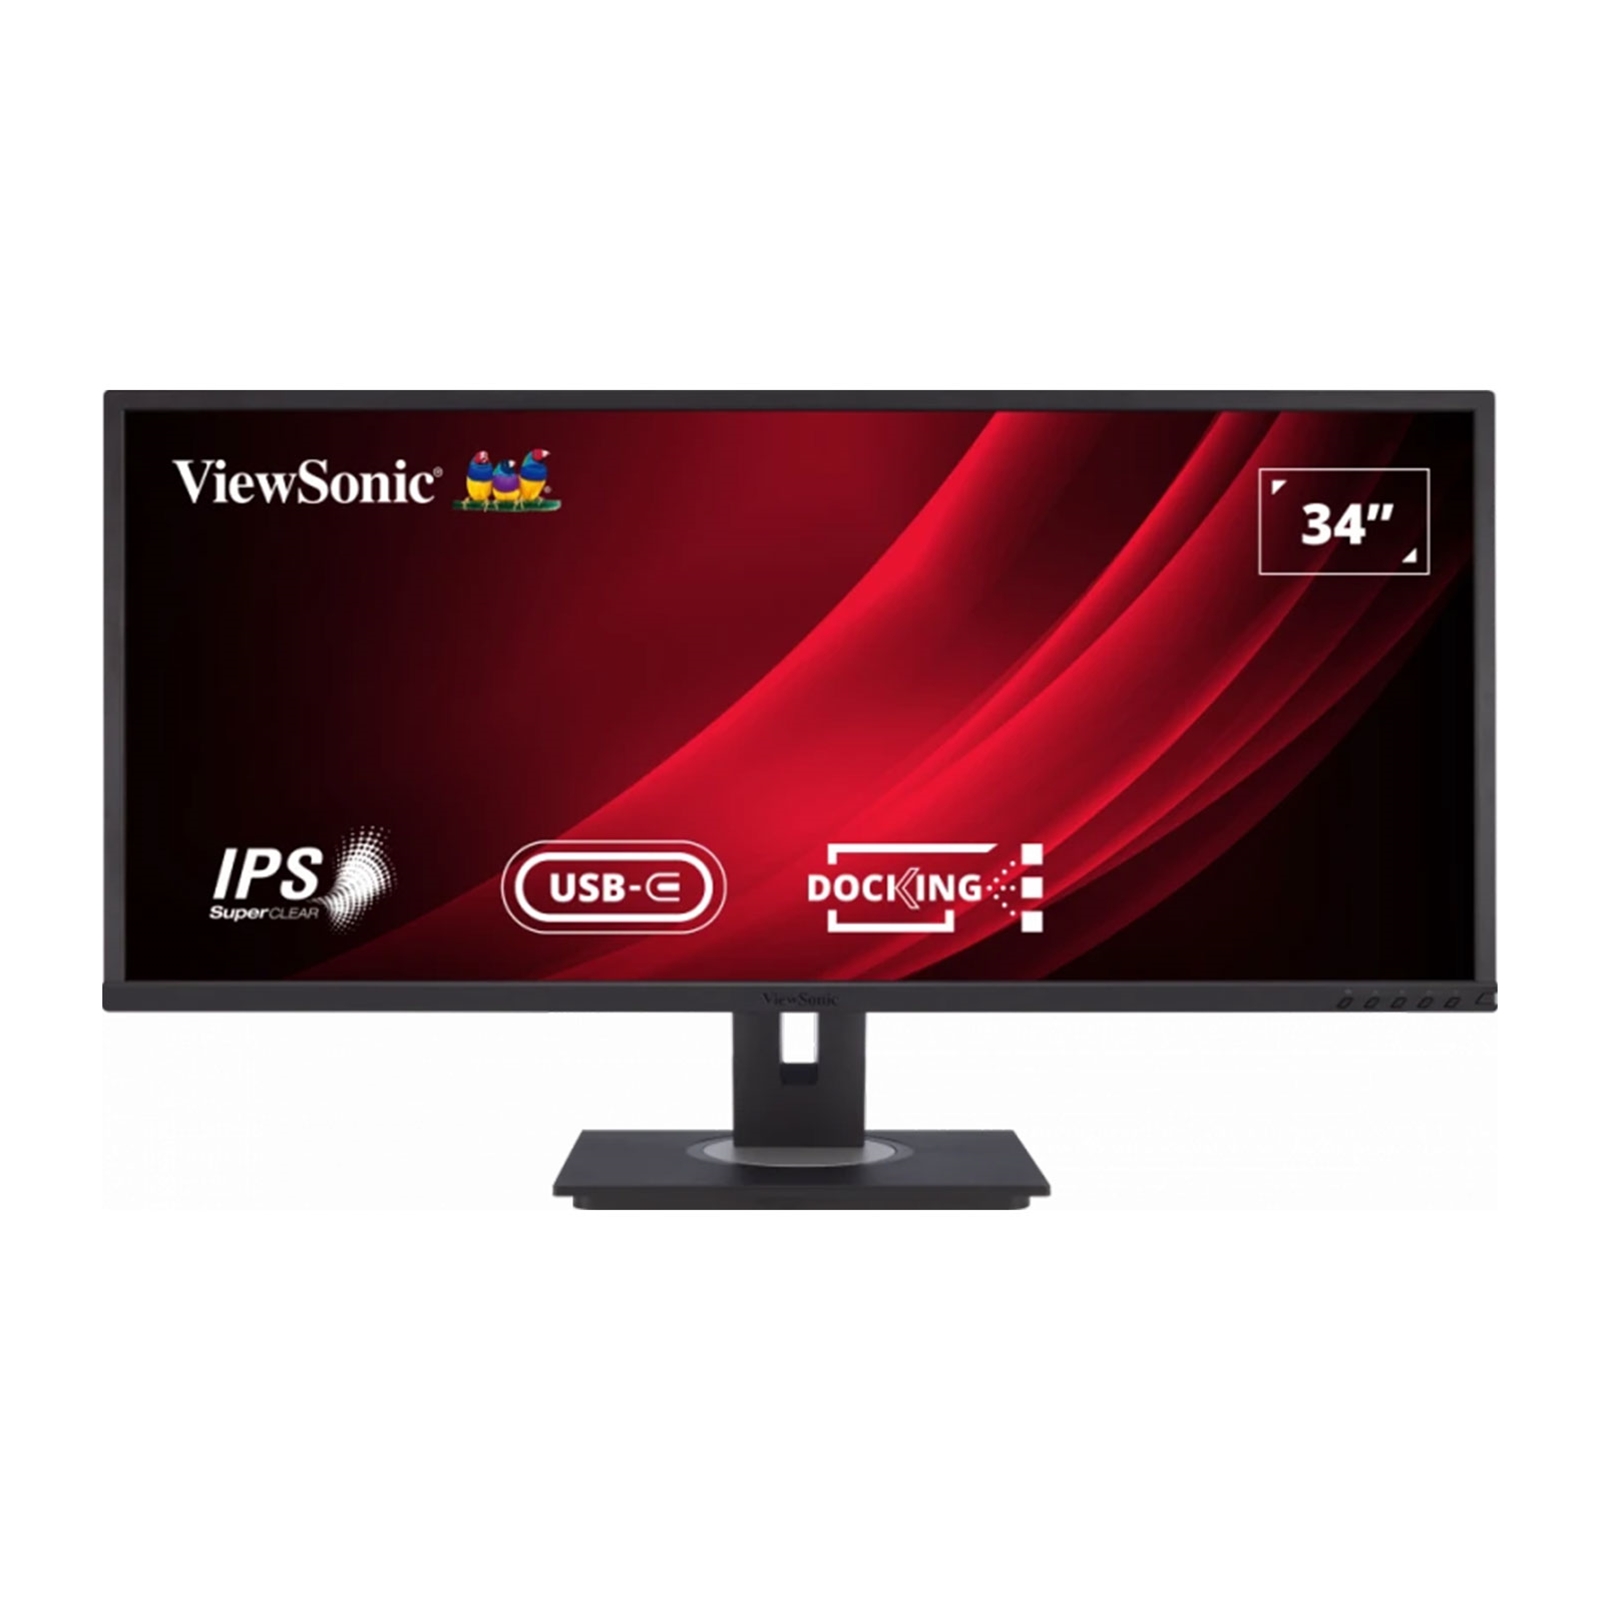 Viewsonic VG3456 34'' Ultra-Wide Docking Monitor, 2xHDMI, Display Port, USB-C, WQHD, 60Hz, 5ms, Freesync, Speakers, VESA, Height Adjust, Black